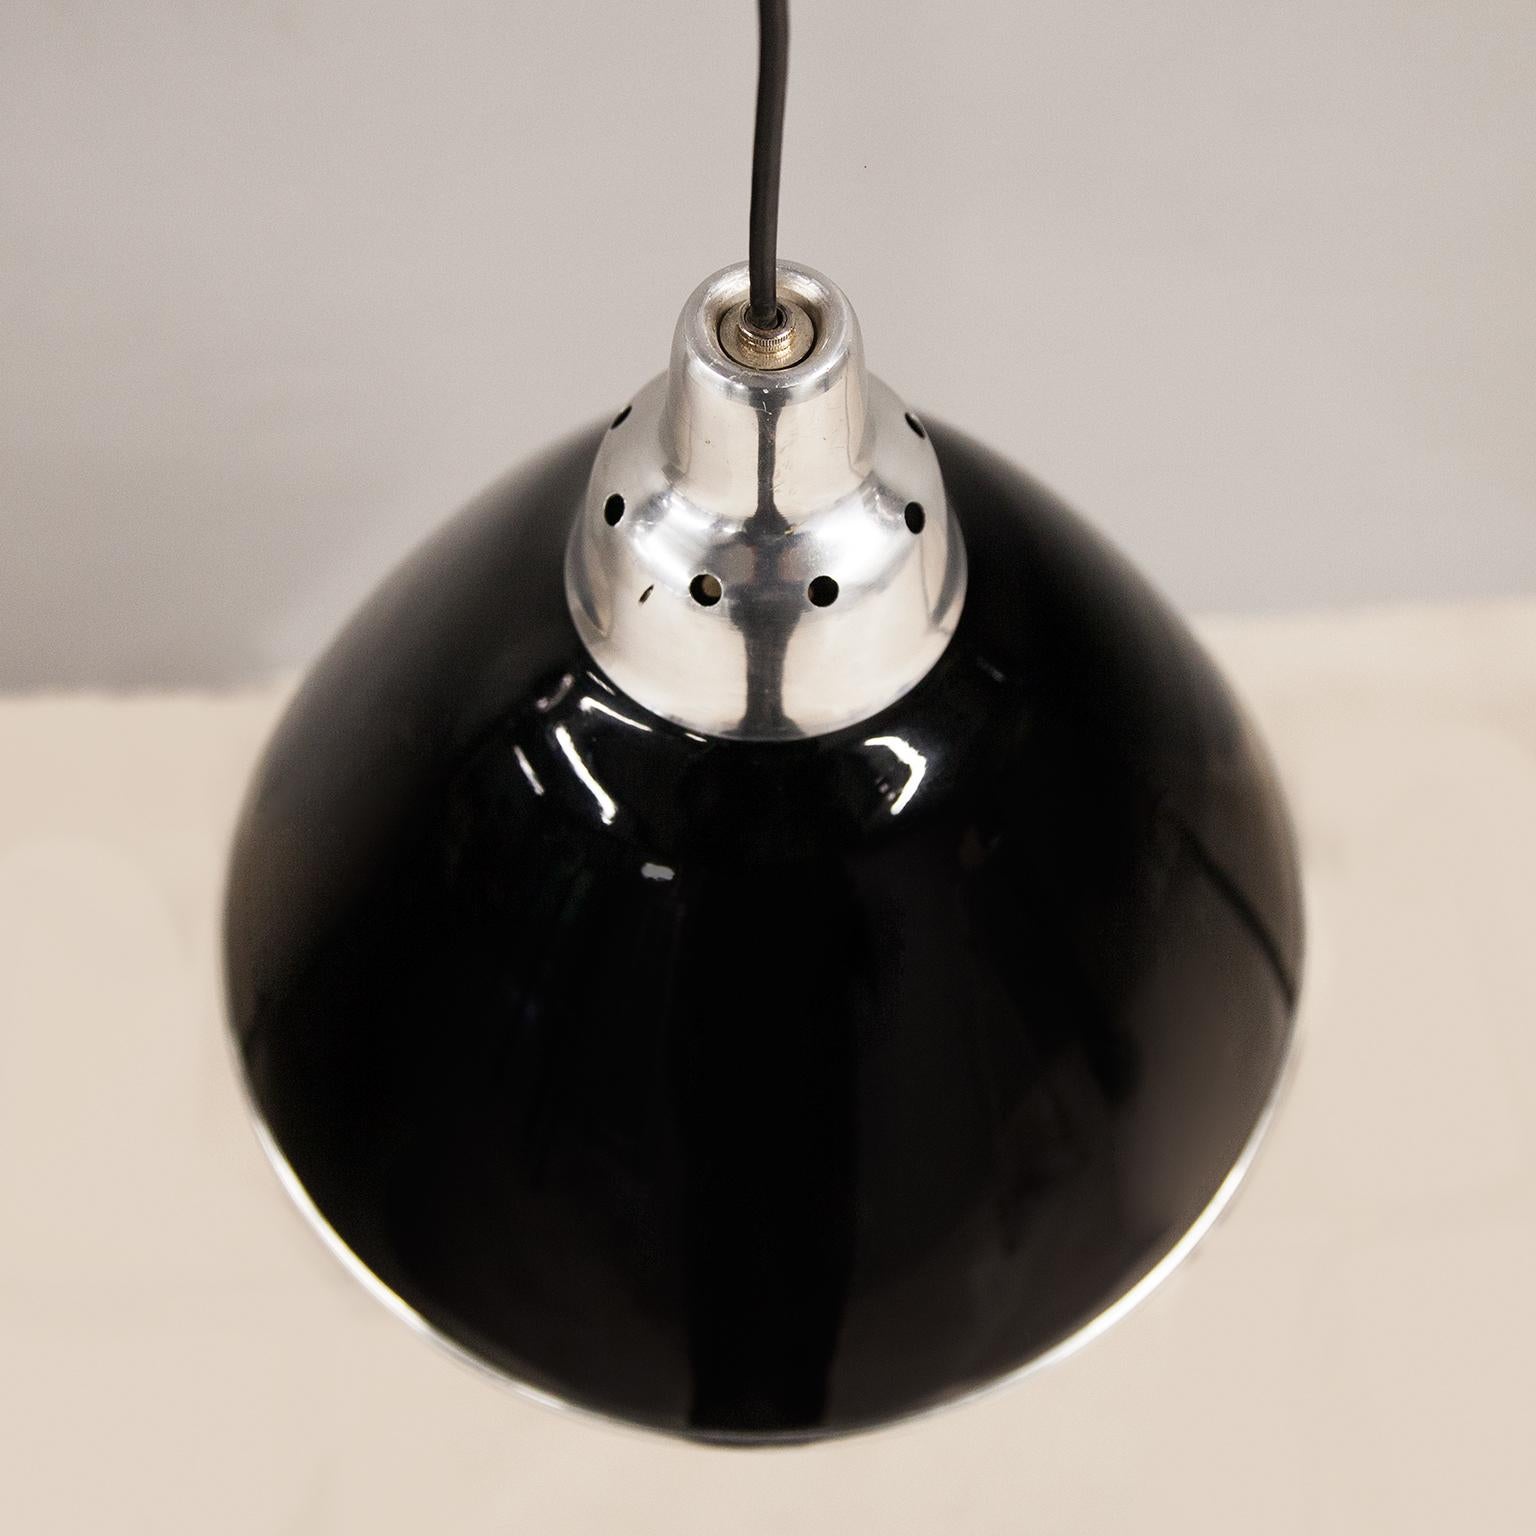 Lampe pendante en forme de cône Phare conçu par Ingo Maurer et fabriqué par Design M, Allemagne 1968. L'abat-jour est en métal laqué noir et le diffuseur est en plastique transparent et possède une douille E27. Le phare est hors production et il est